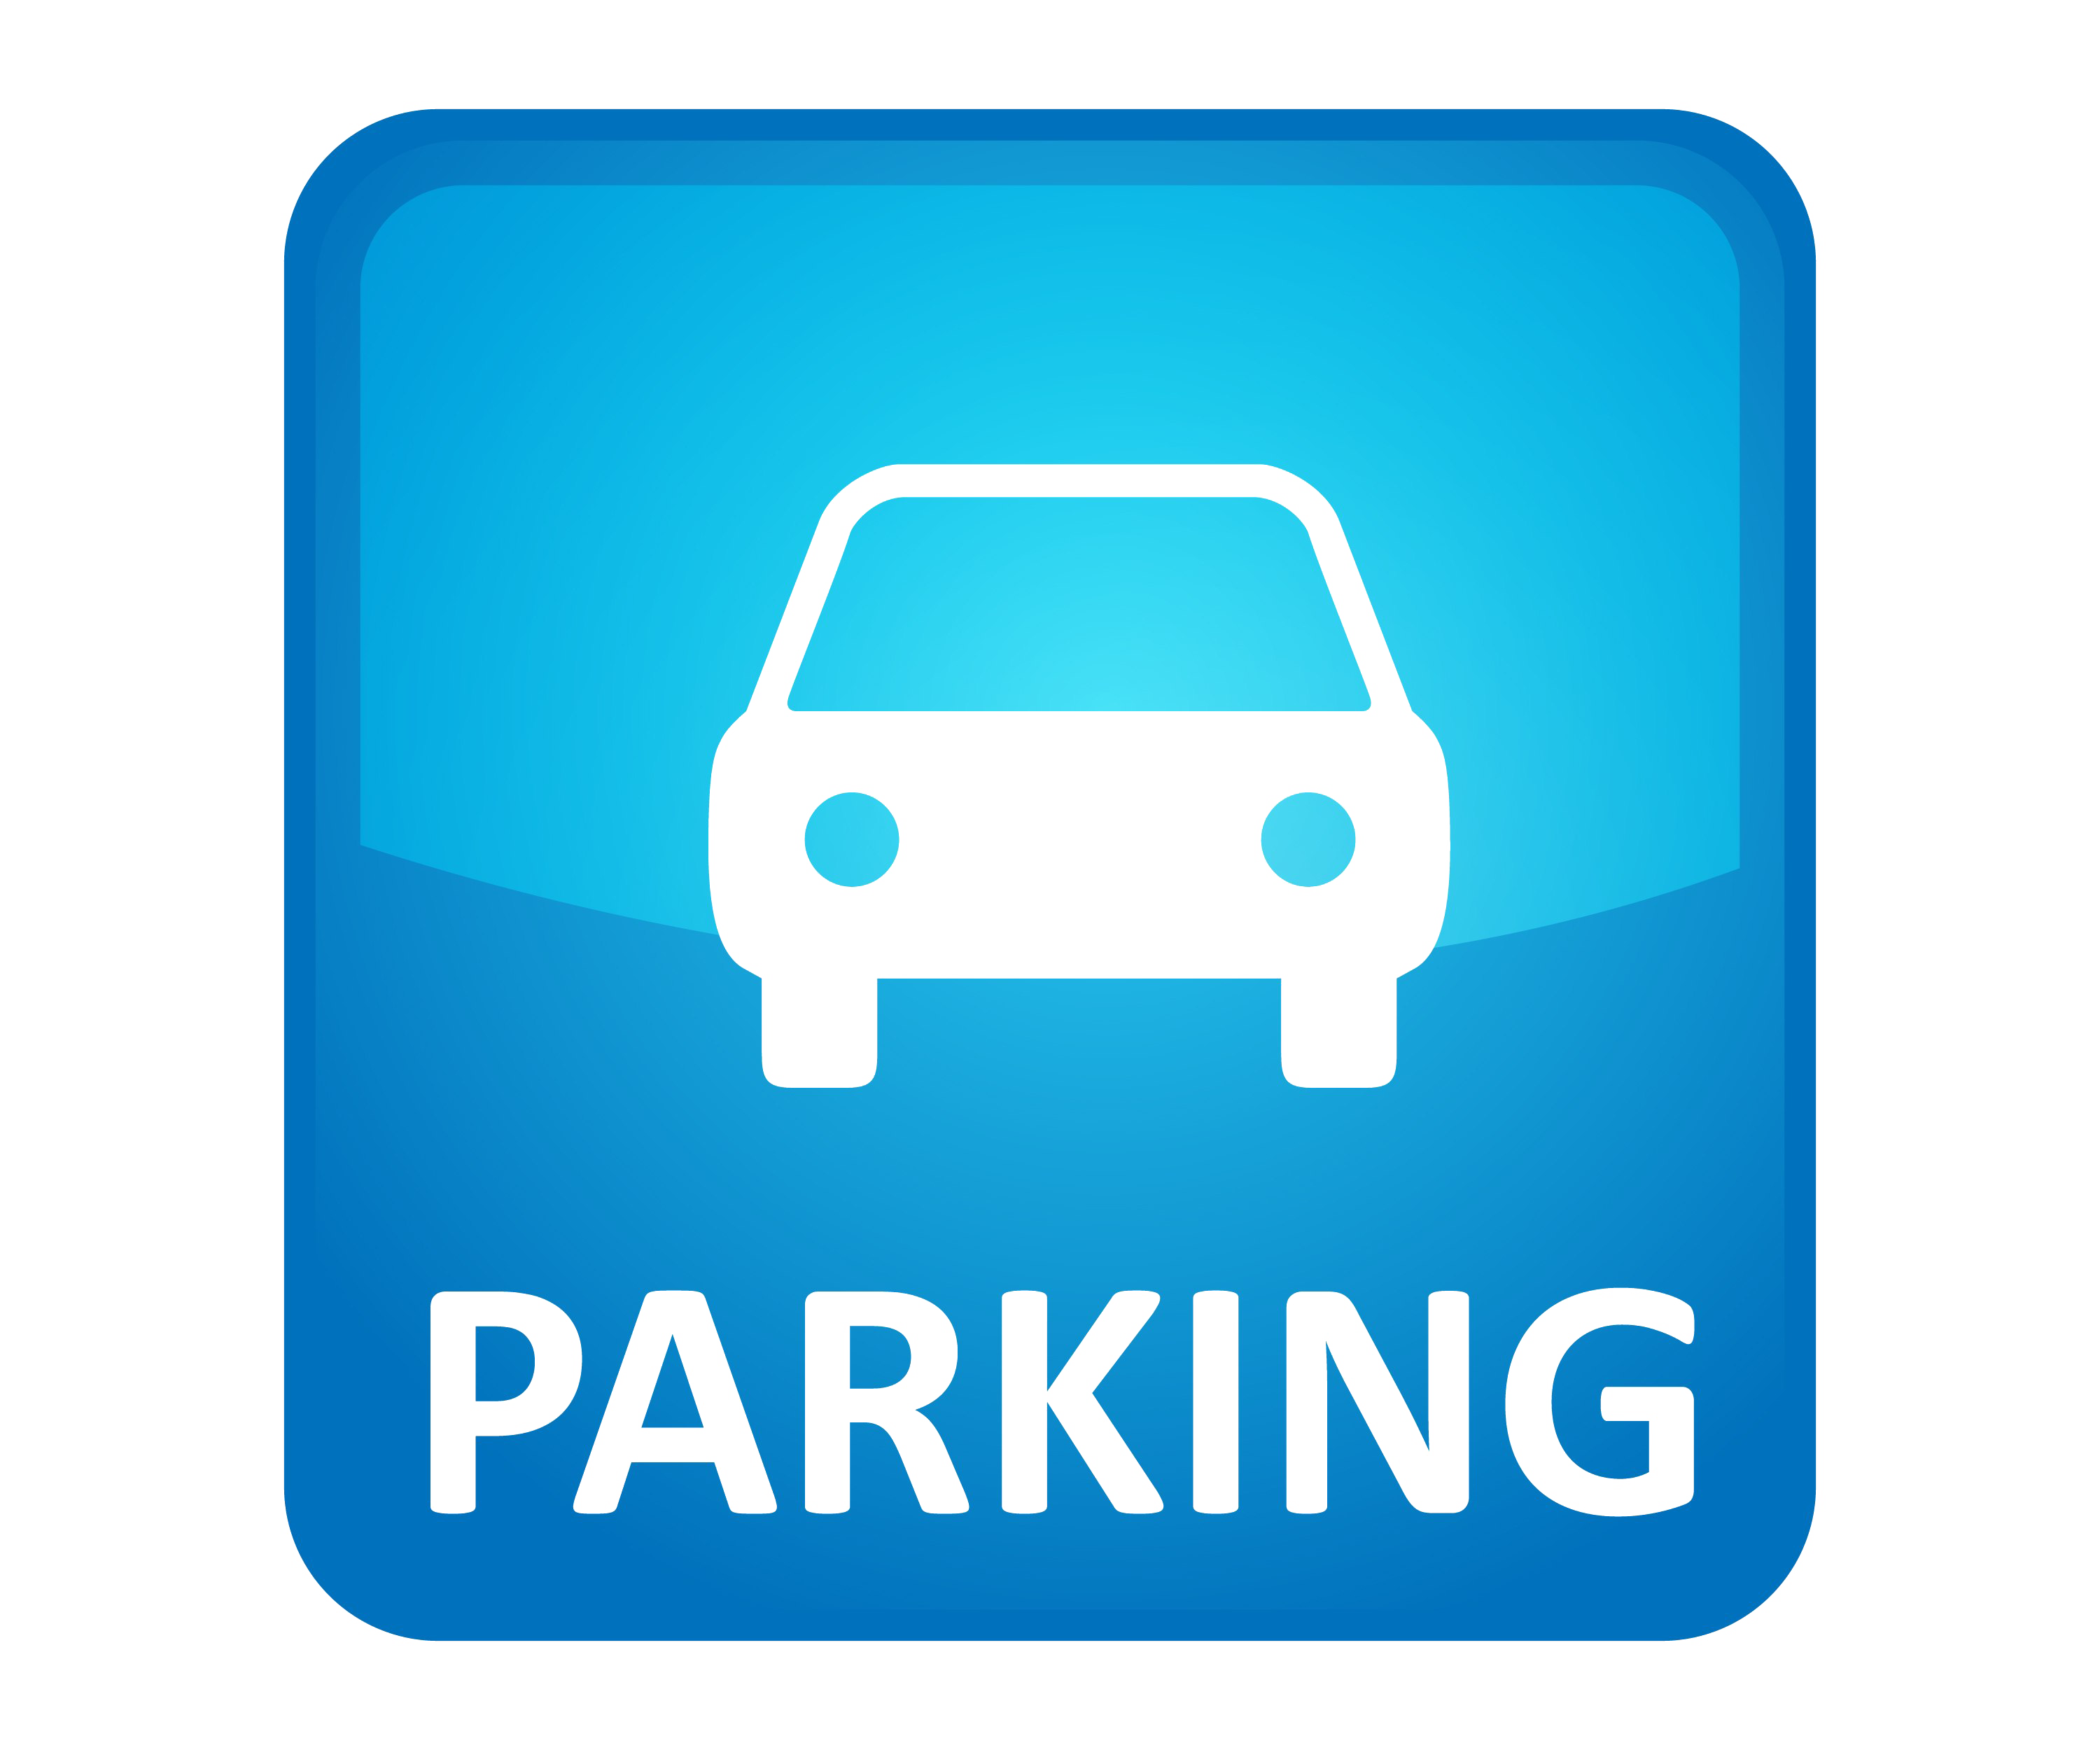 Parking Only Sign PNG pngteam.com